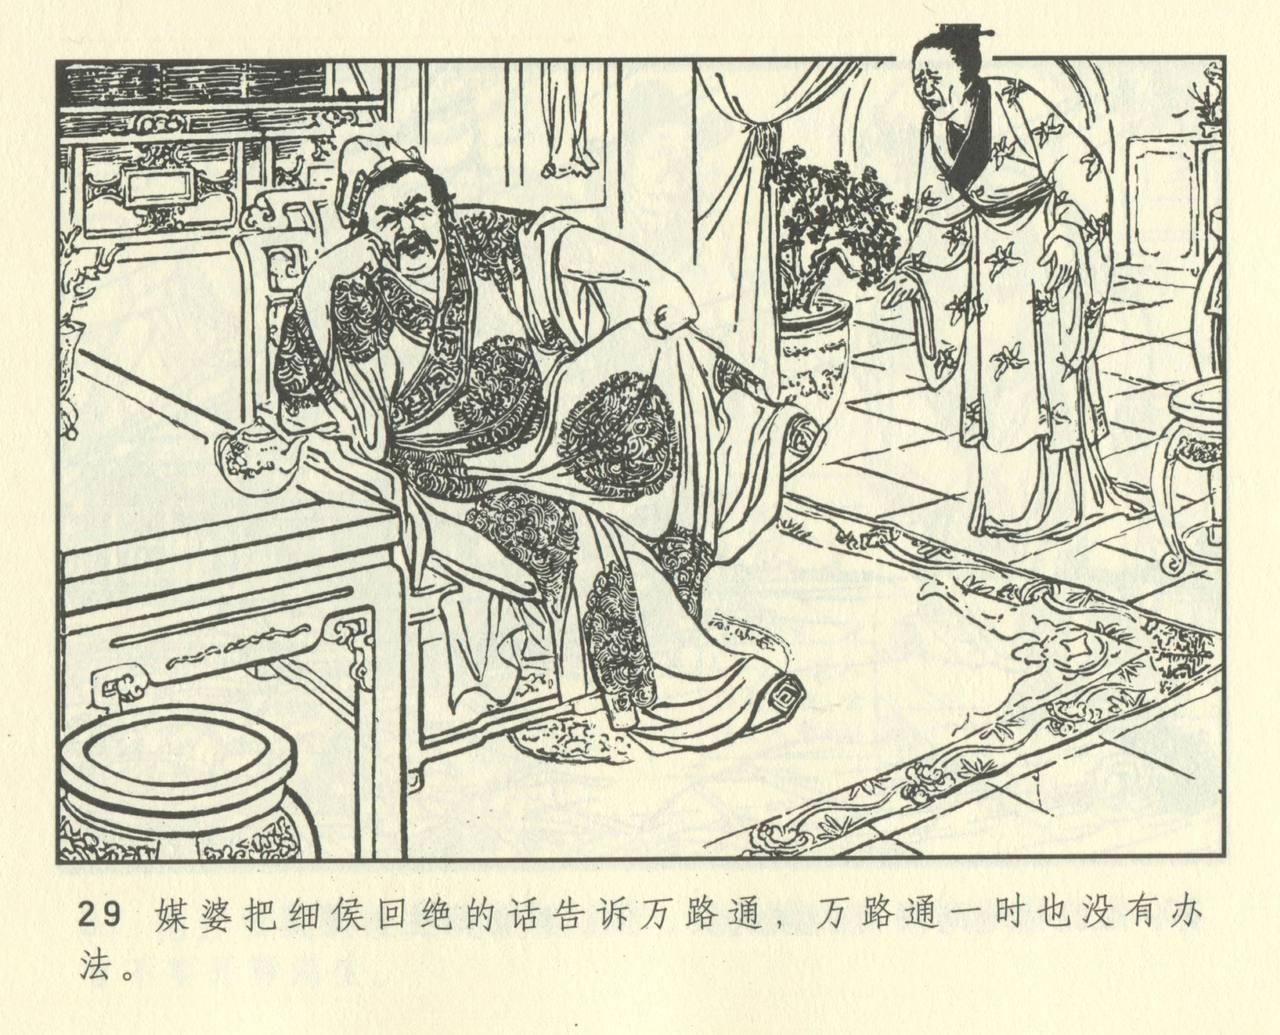 聊斋志异 张玮等绘 天津人民美术出版社 卷二十一 ~ 三十 440